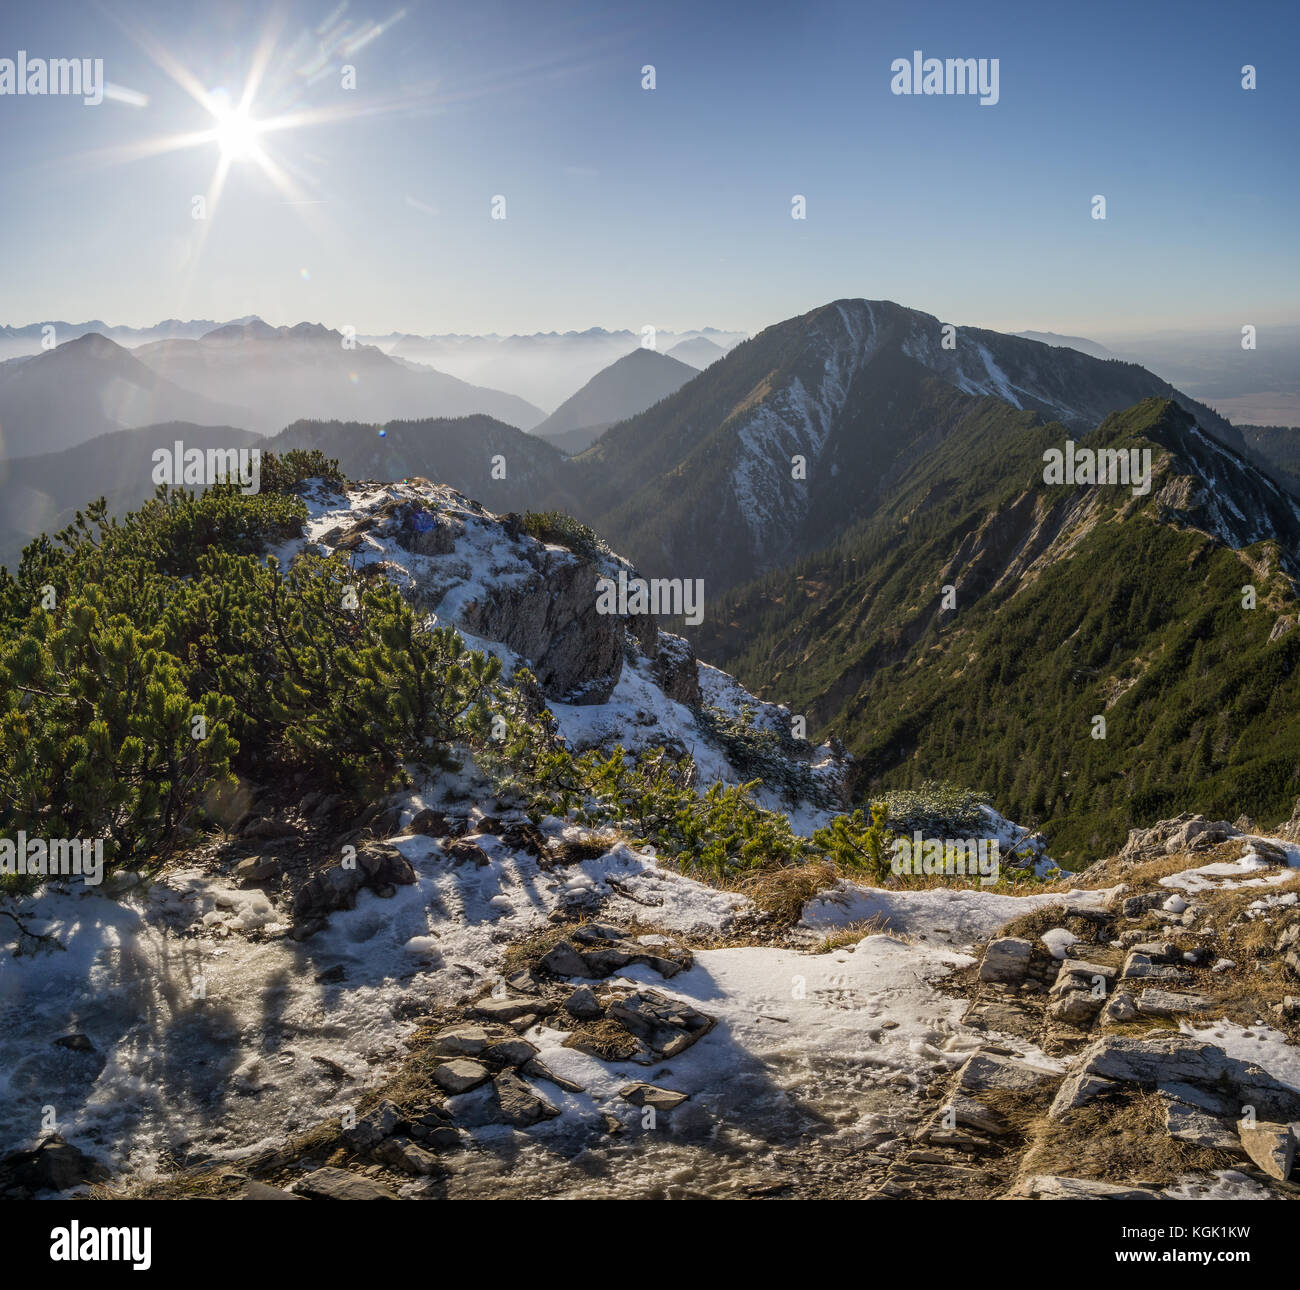 Vista panoramica dal herzogstand con il mountainscape in background. Foto Stock